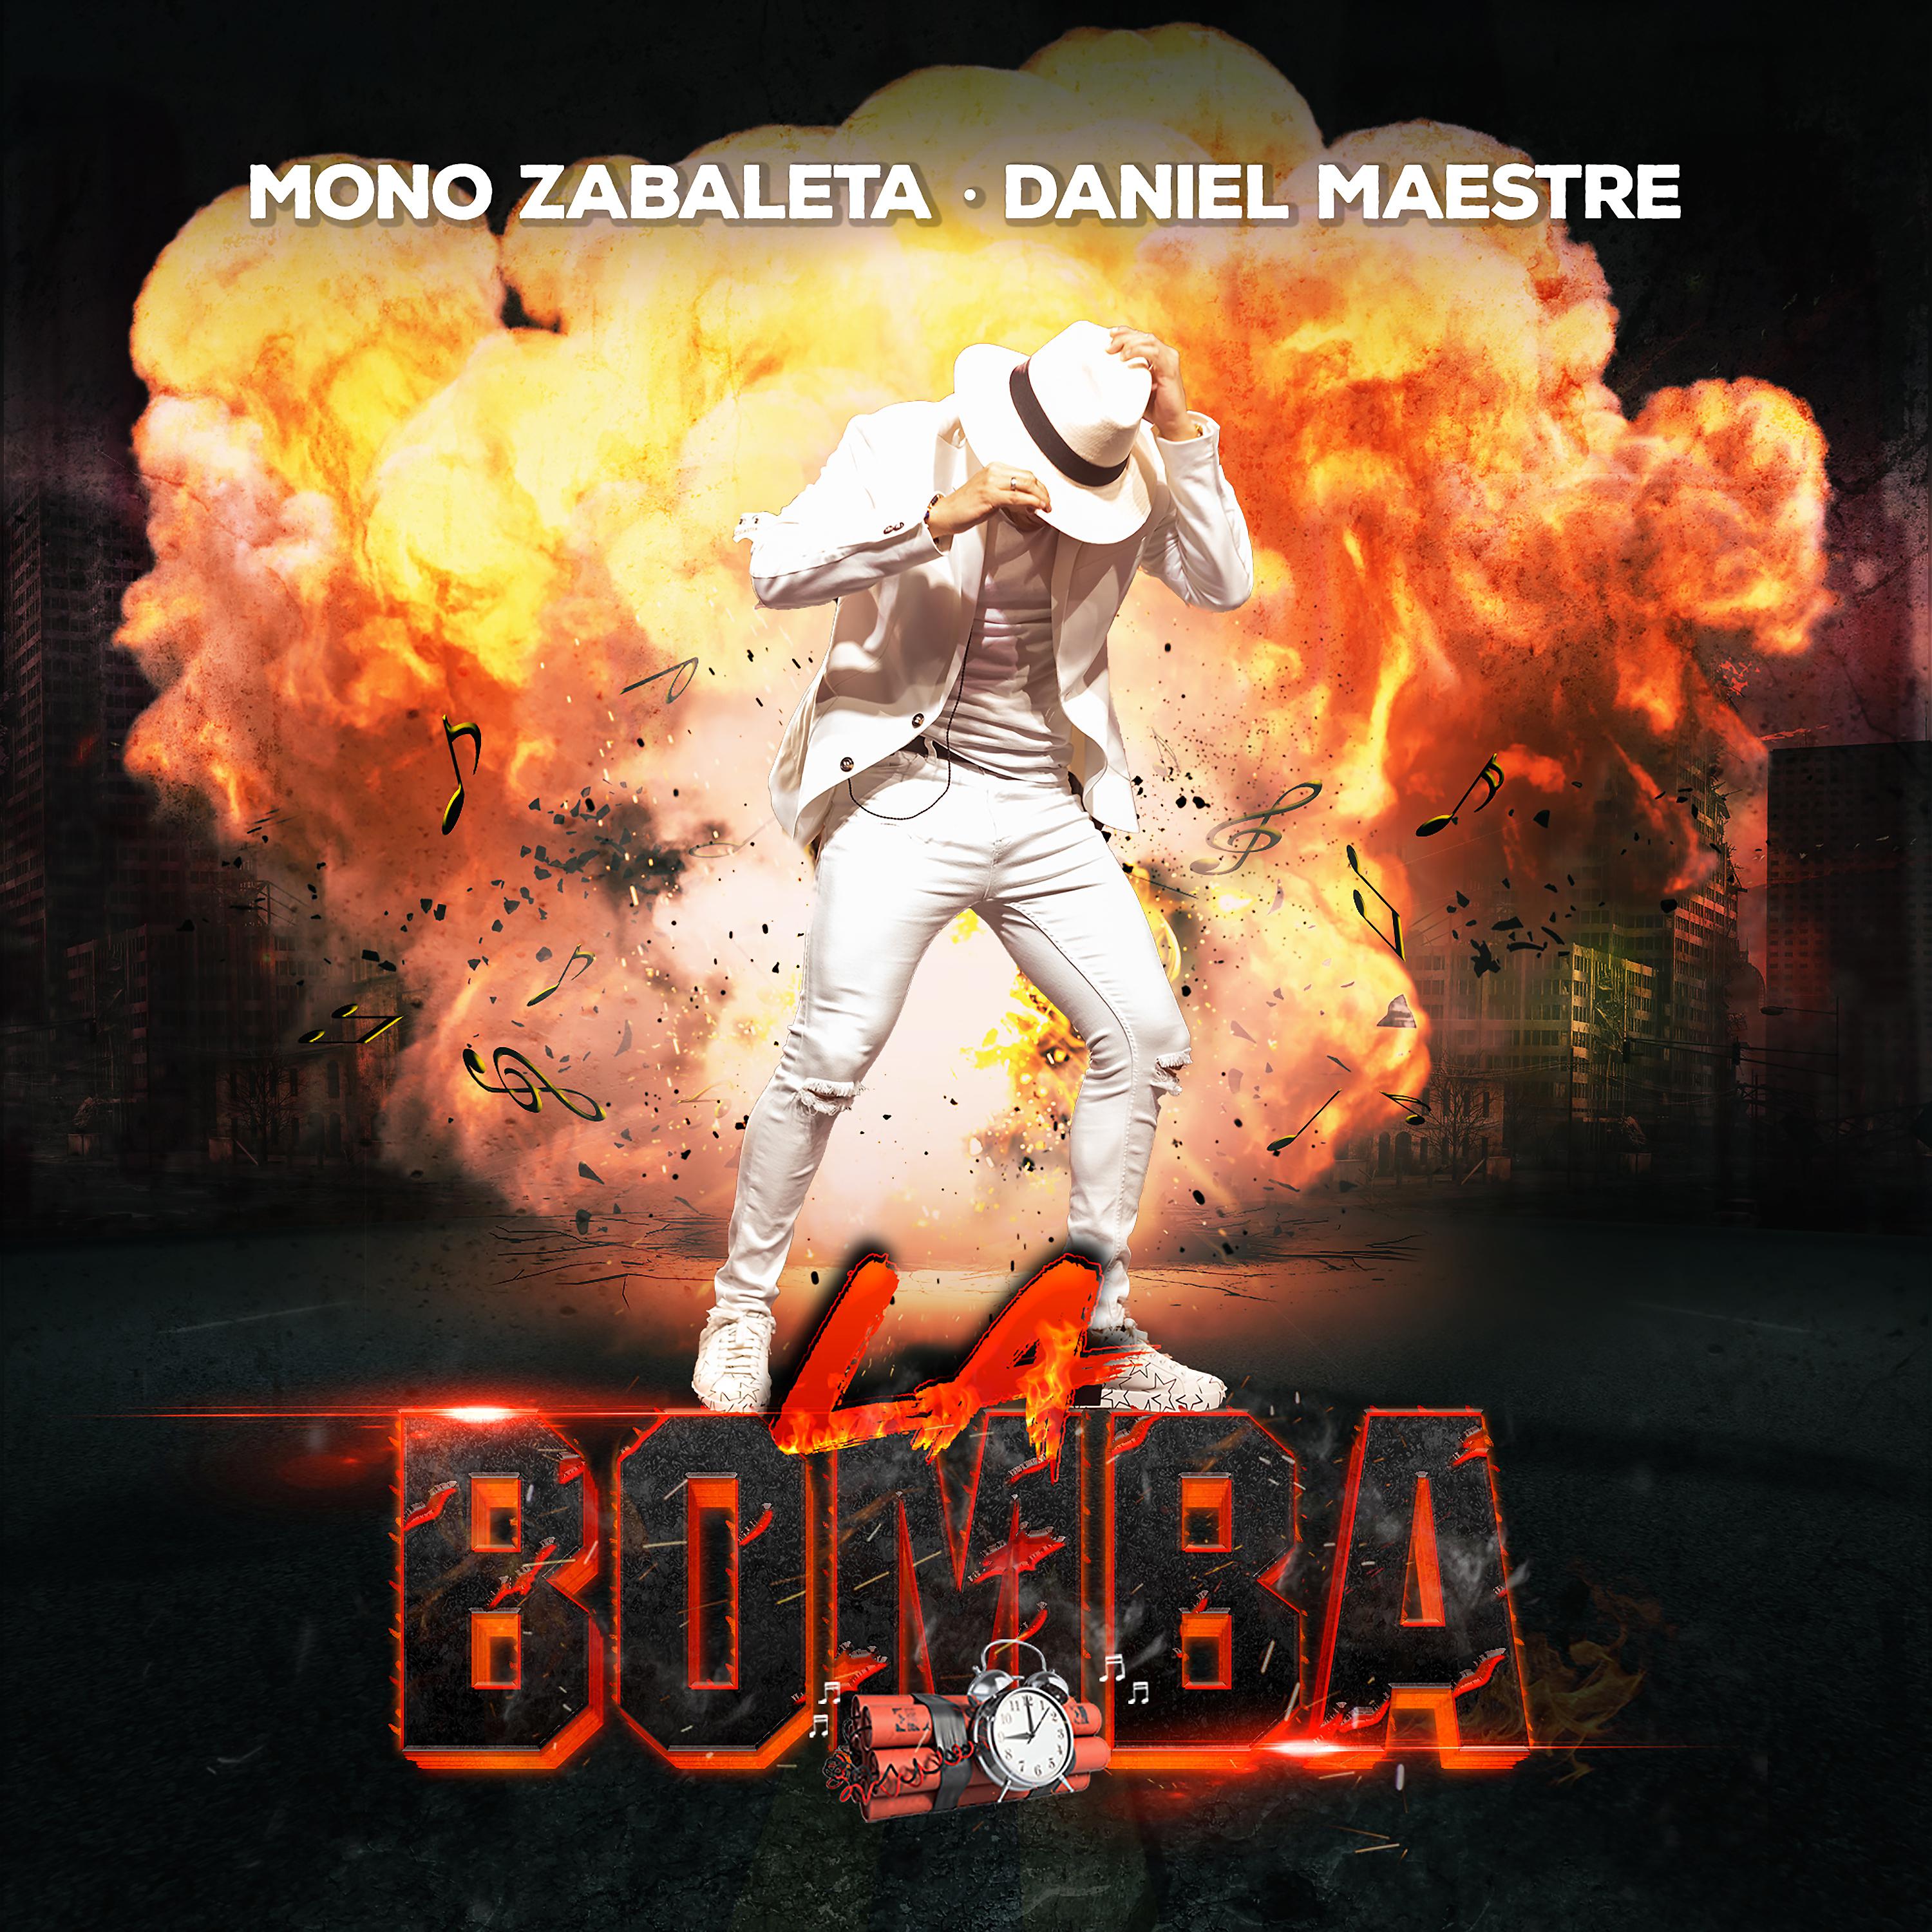 Постер альбома La Bomba